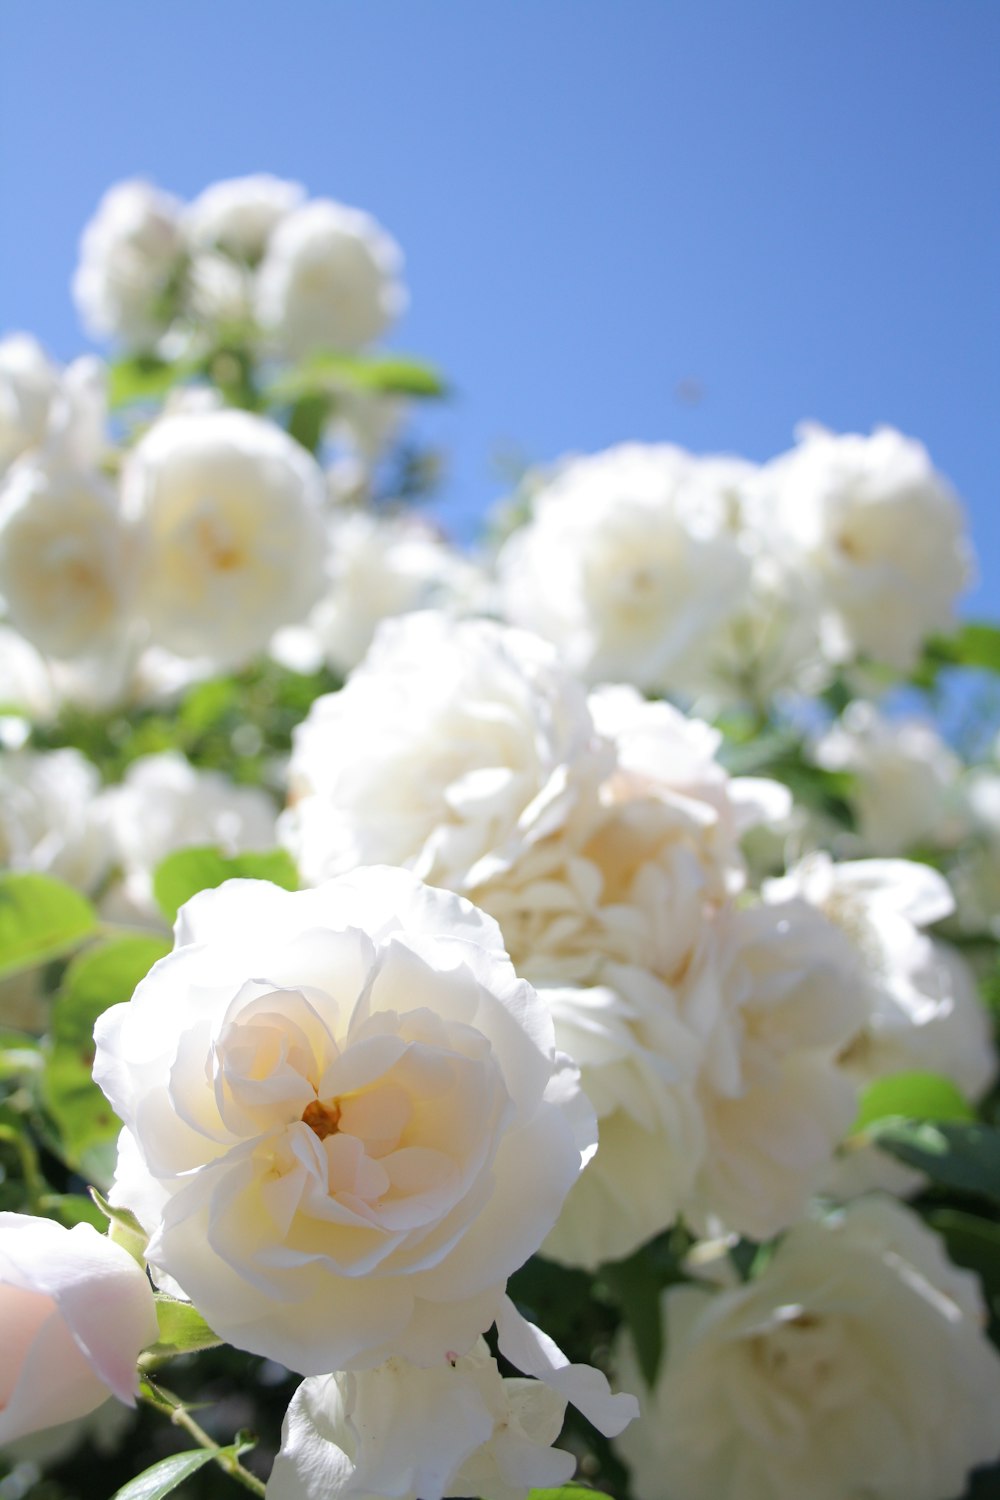 fotografia ravvicinata del fiore di rosa bianca